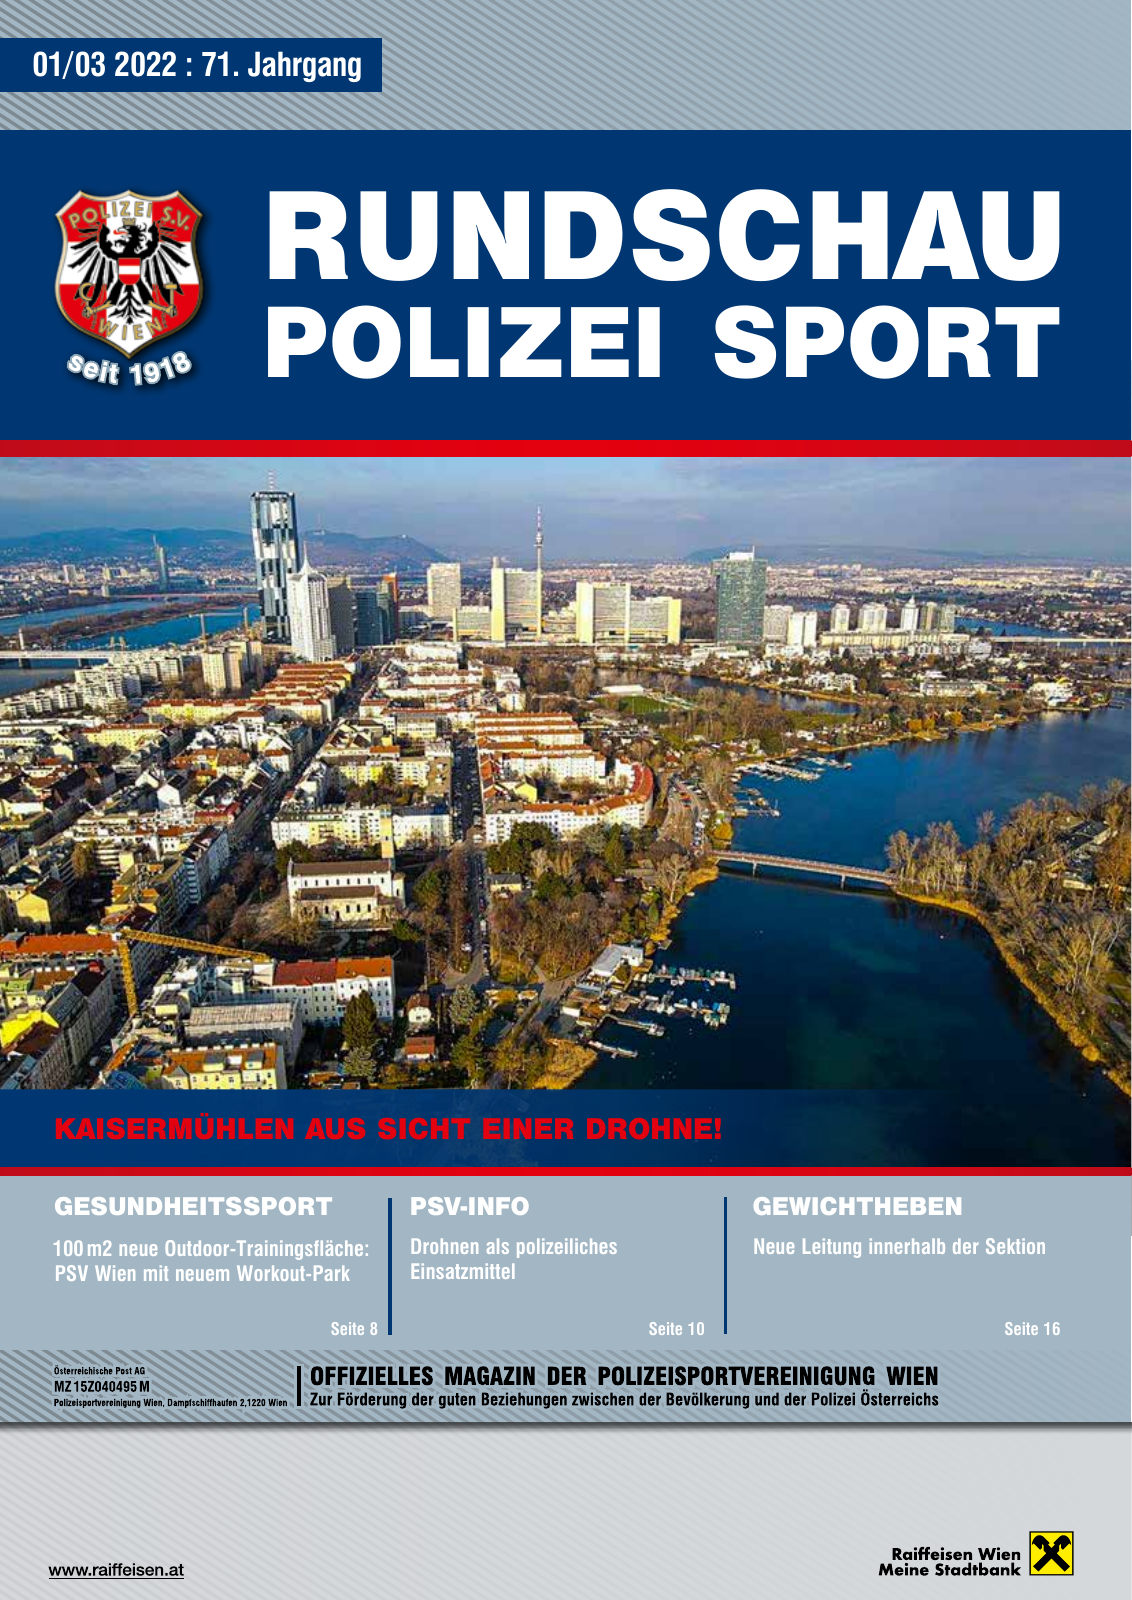 Vorschau Rundschau Polizei Sport 01-03/2022 Seite 1